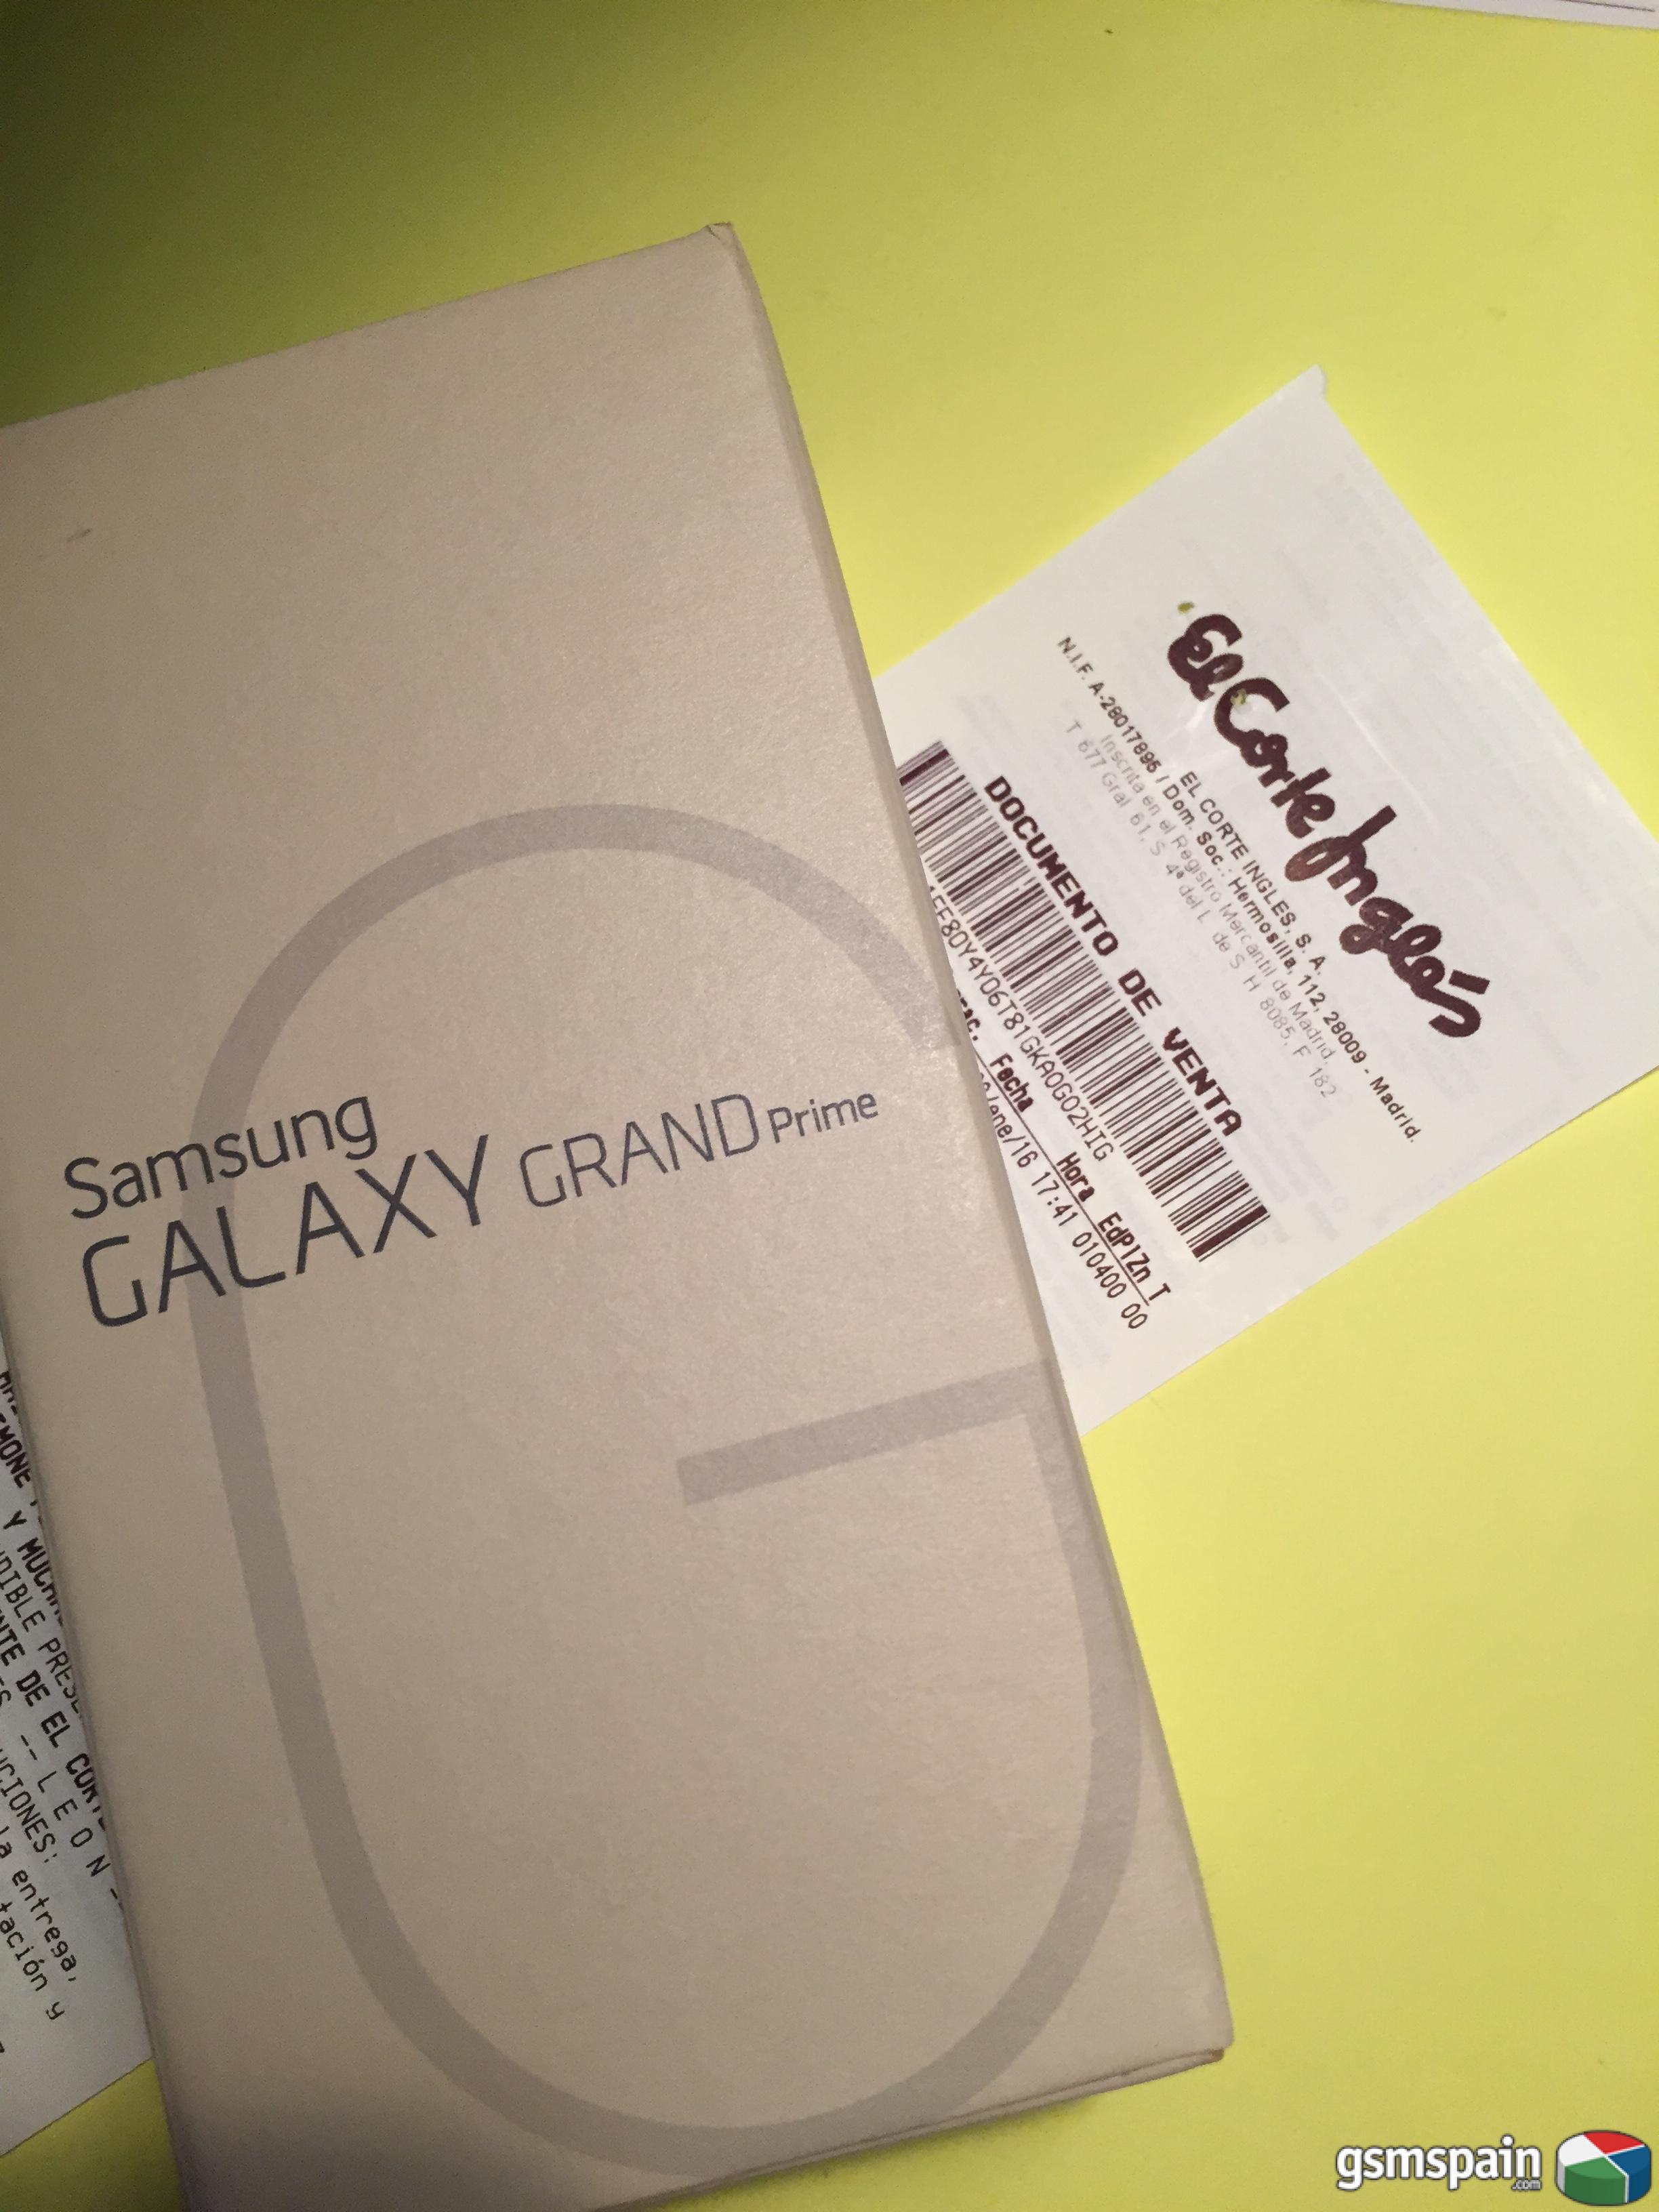 [vendo] Dos Samsung Galaxy Grand Prime Precintados Y Libres Garantia El Corte Ingls